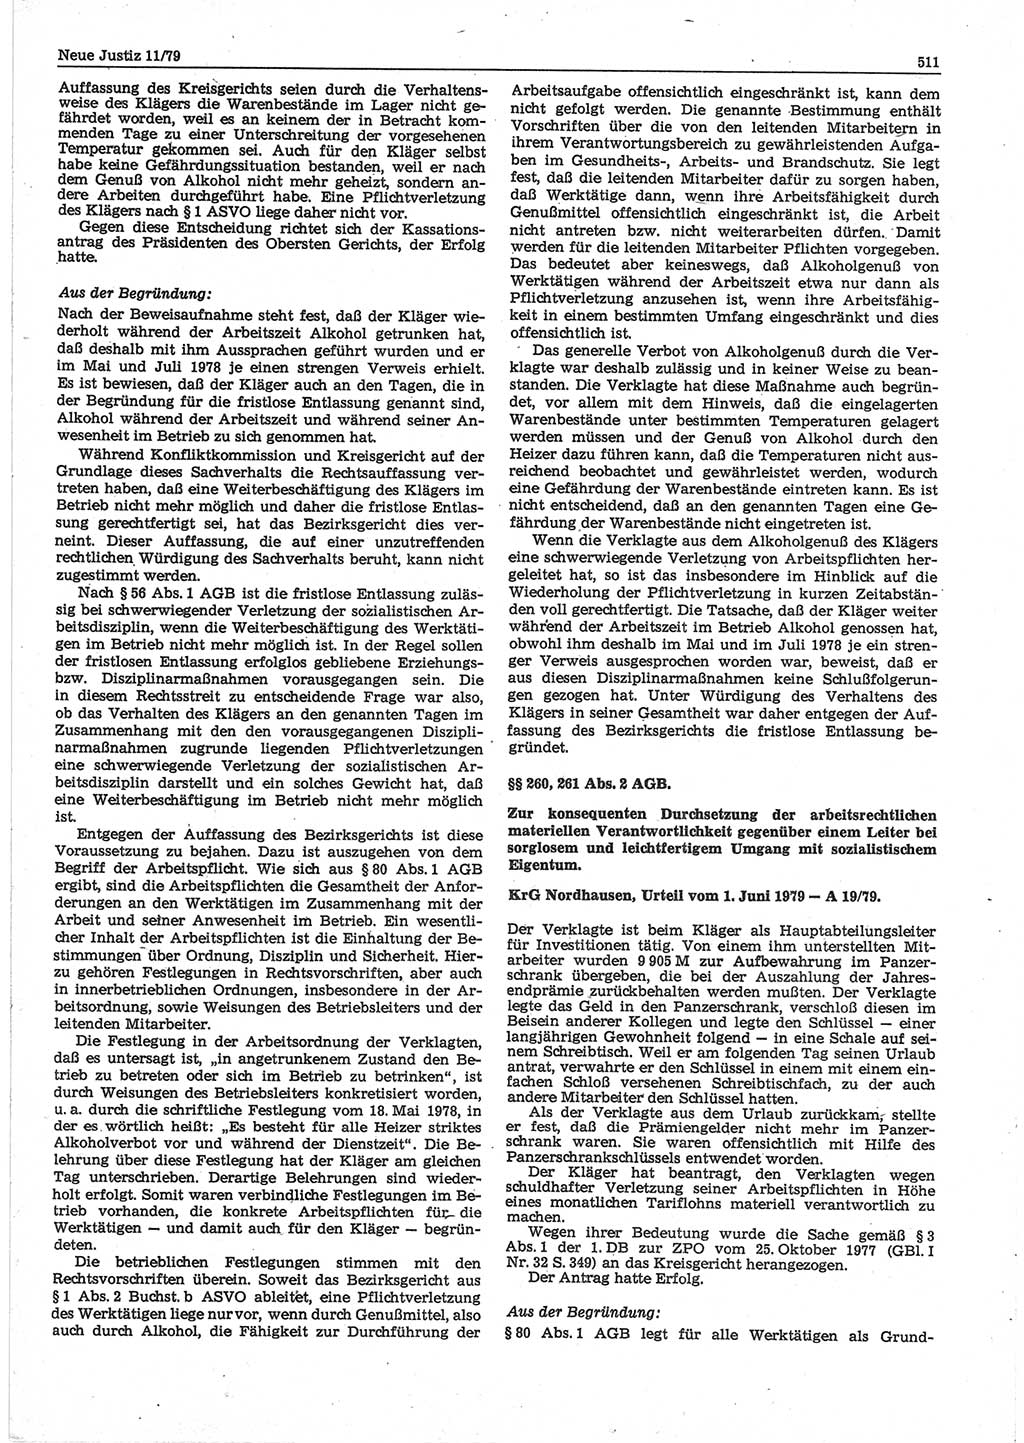 Neue Justiz (NJ), Zeitschrift für sozialistisches Recht und Gesetzlichkeit [Deutsche Demokratische Republik (DDR)], 33. Jahrgang 1979, Seite 511 (NJ DDR 1979, S. 511)